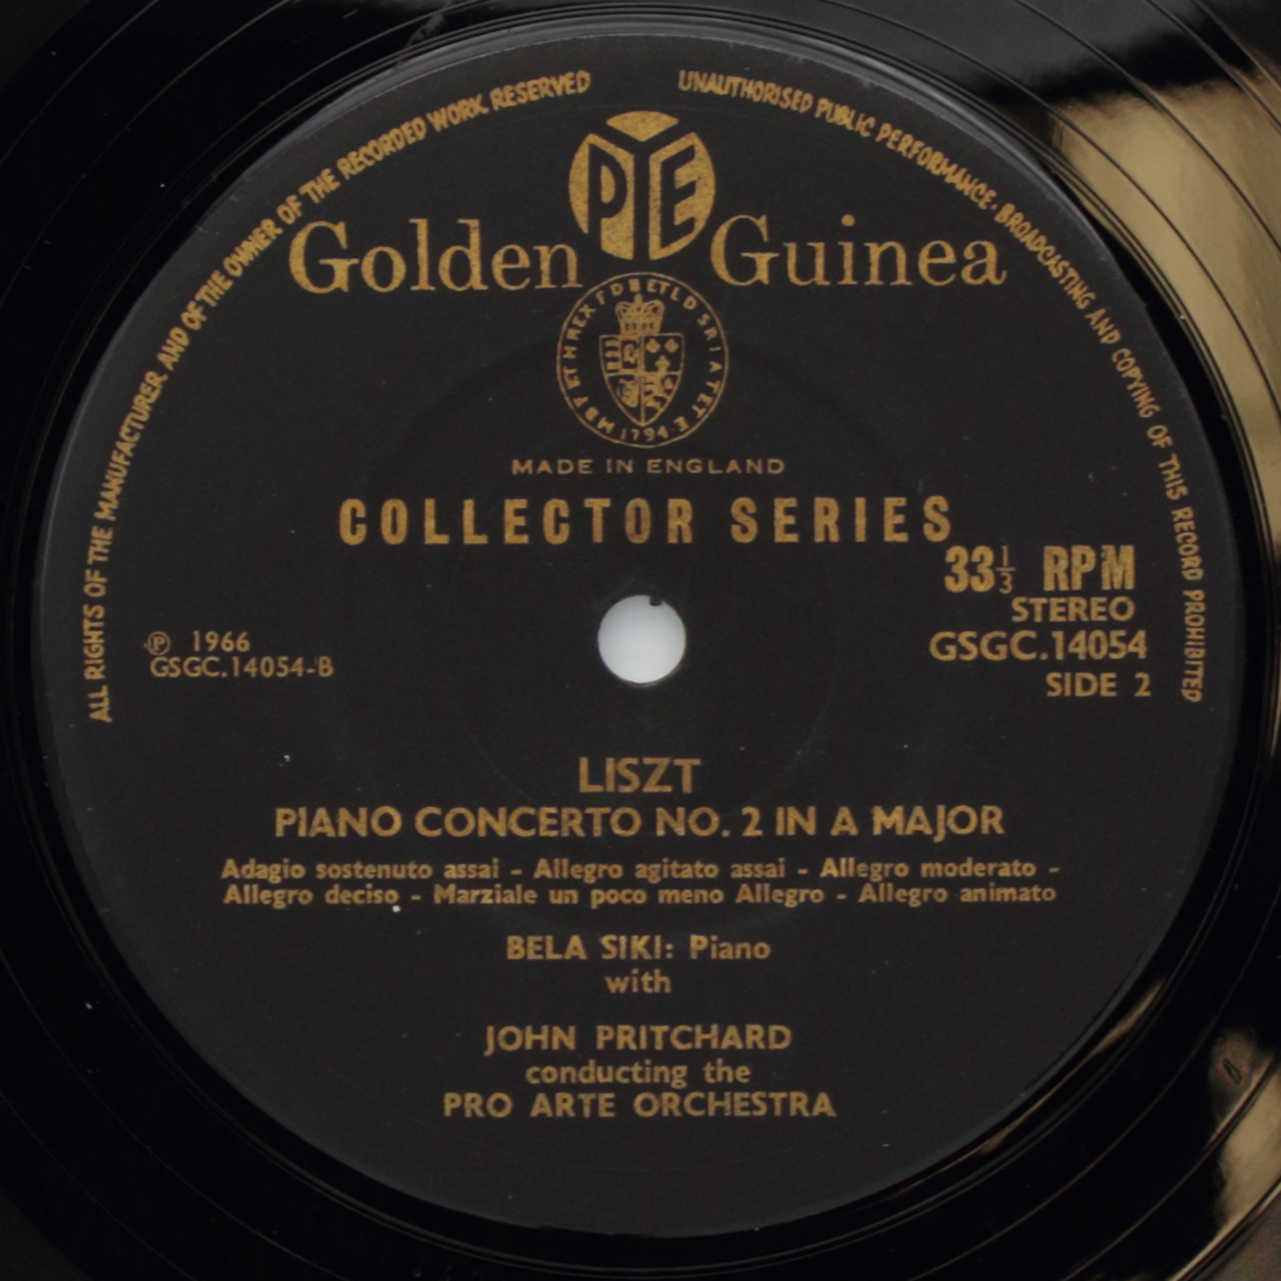 Bartók: Piano Concerto No. 3 / Liszt: Piano Concerto No. 2 in A major